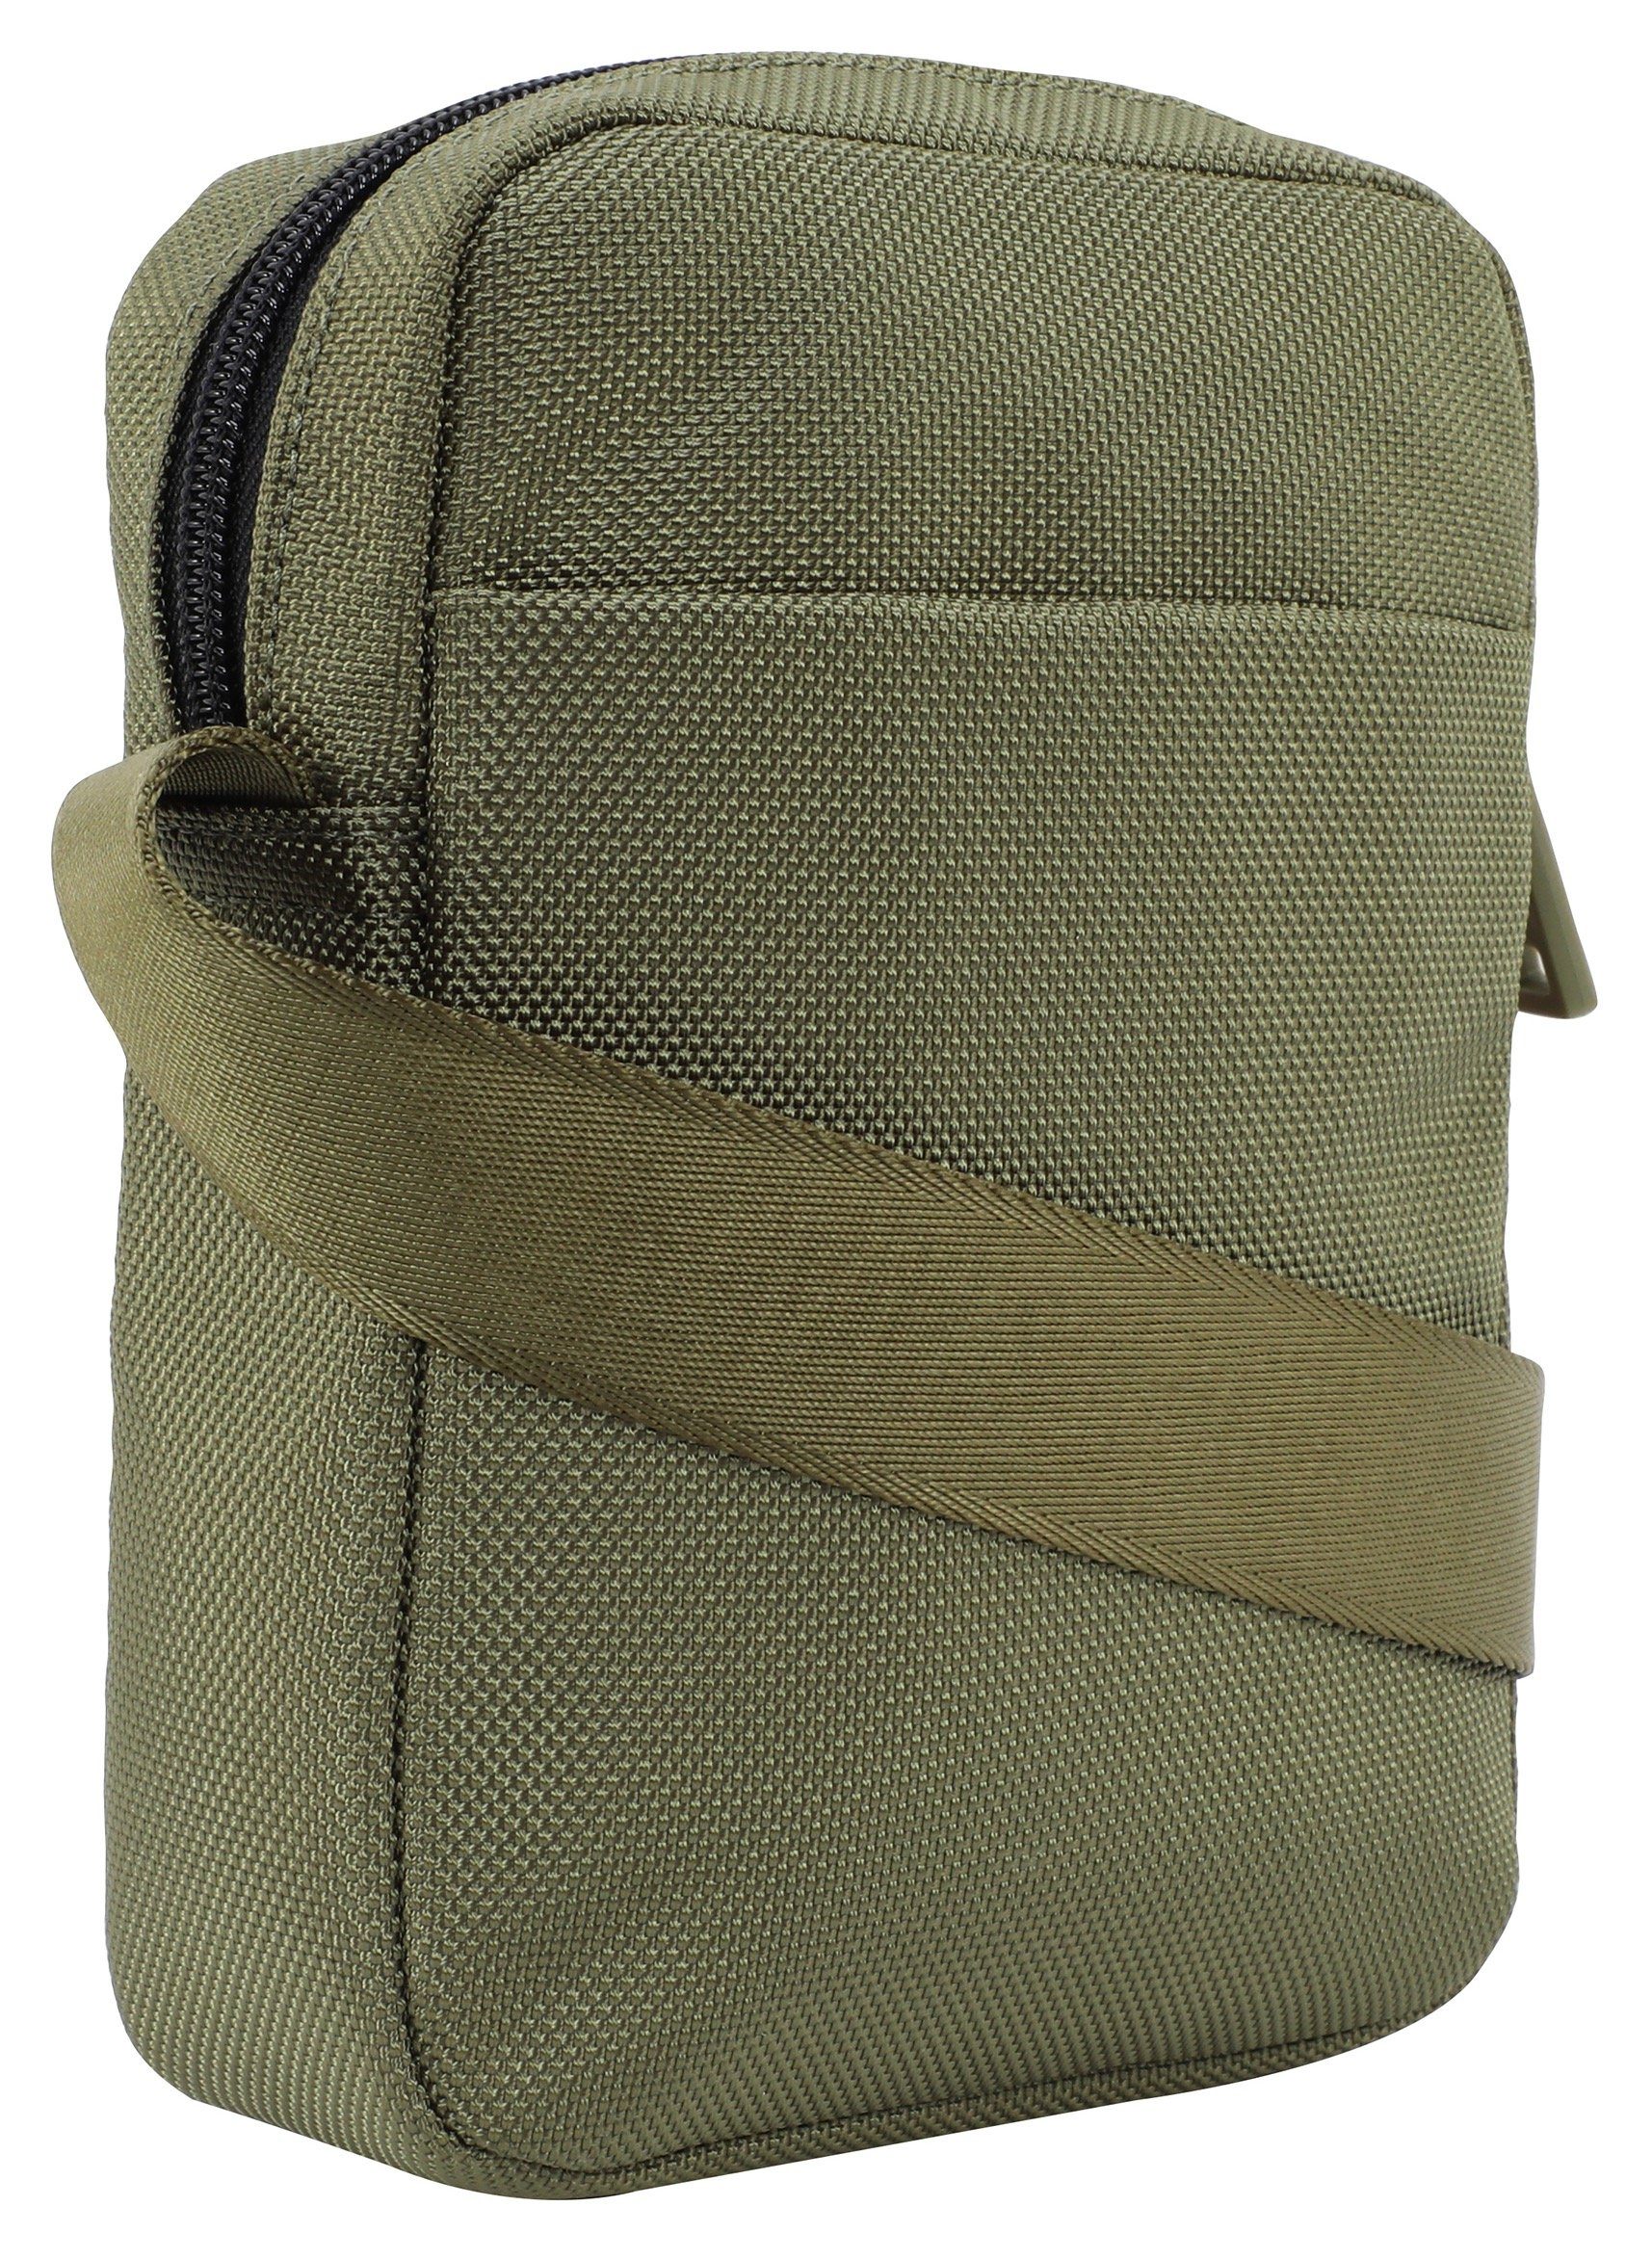 Umhängetasche shoulderbag dunkelgrün im Design modica rafael Joop Jeans praktischen xsvz,